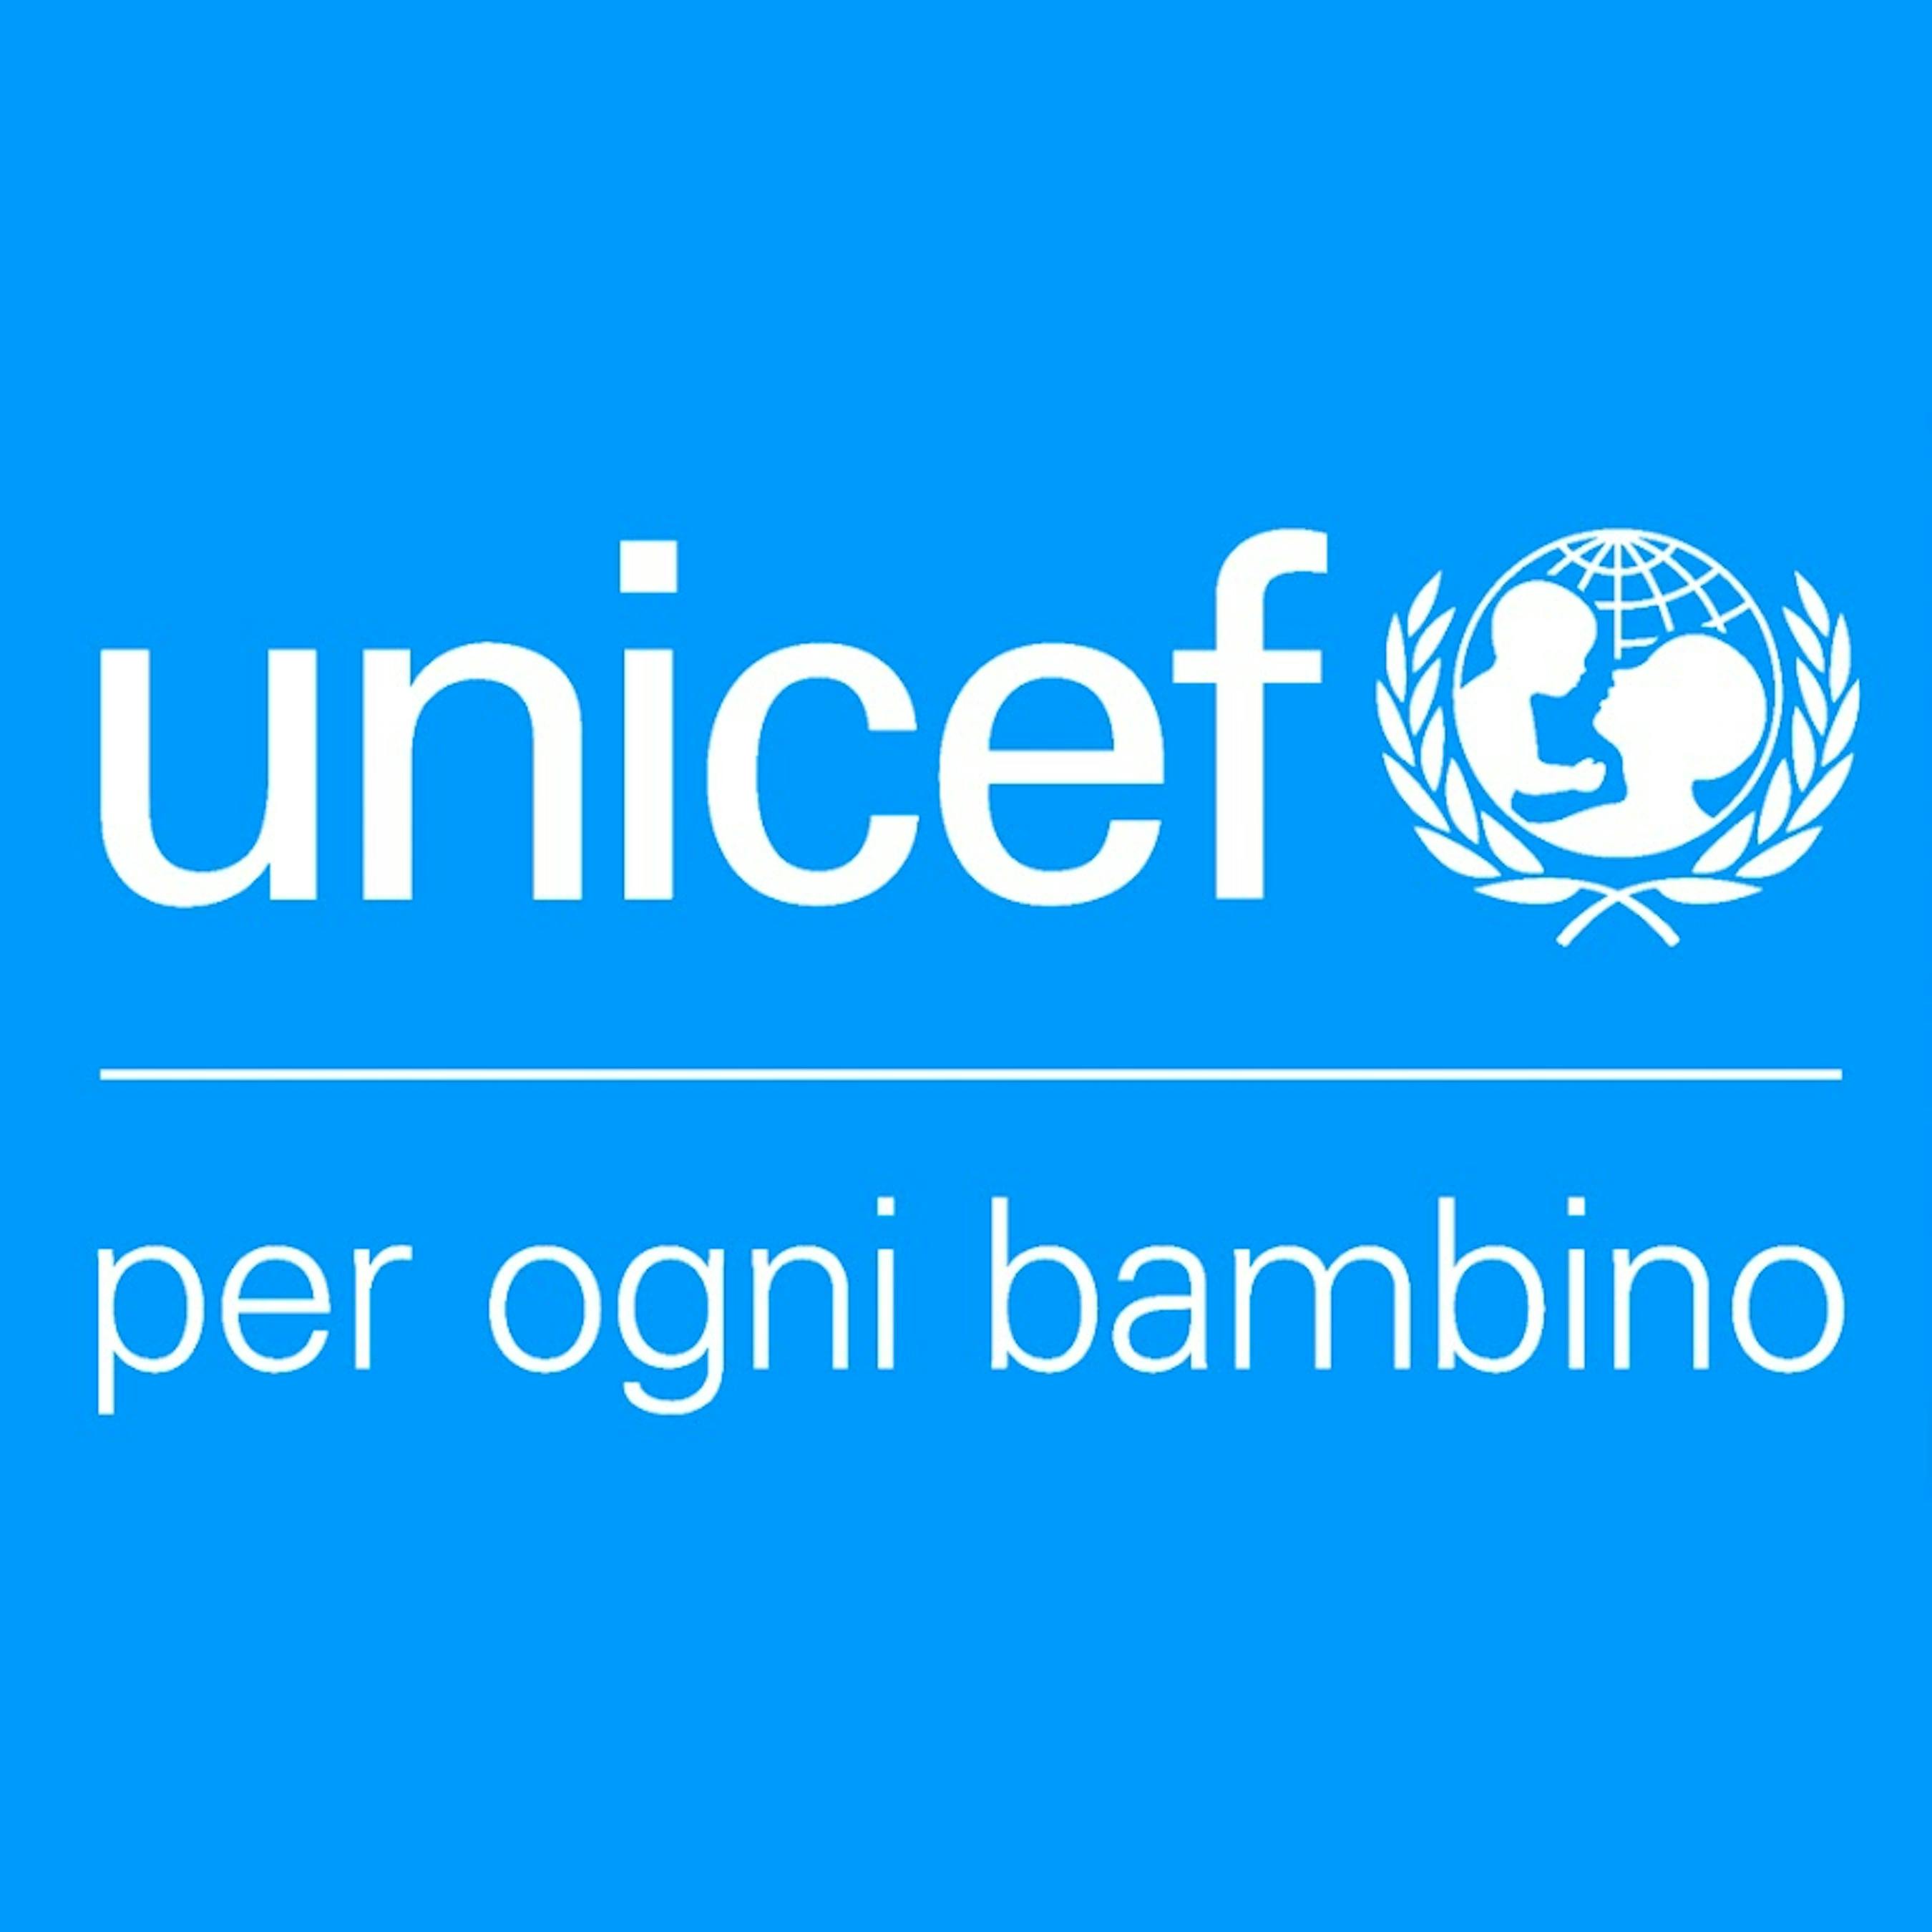 UNICEF Italia e Unione Provincie d’Italia (UPI) firmano un protocollo di intesa